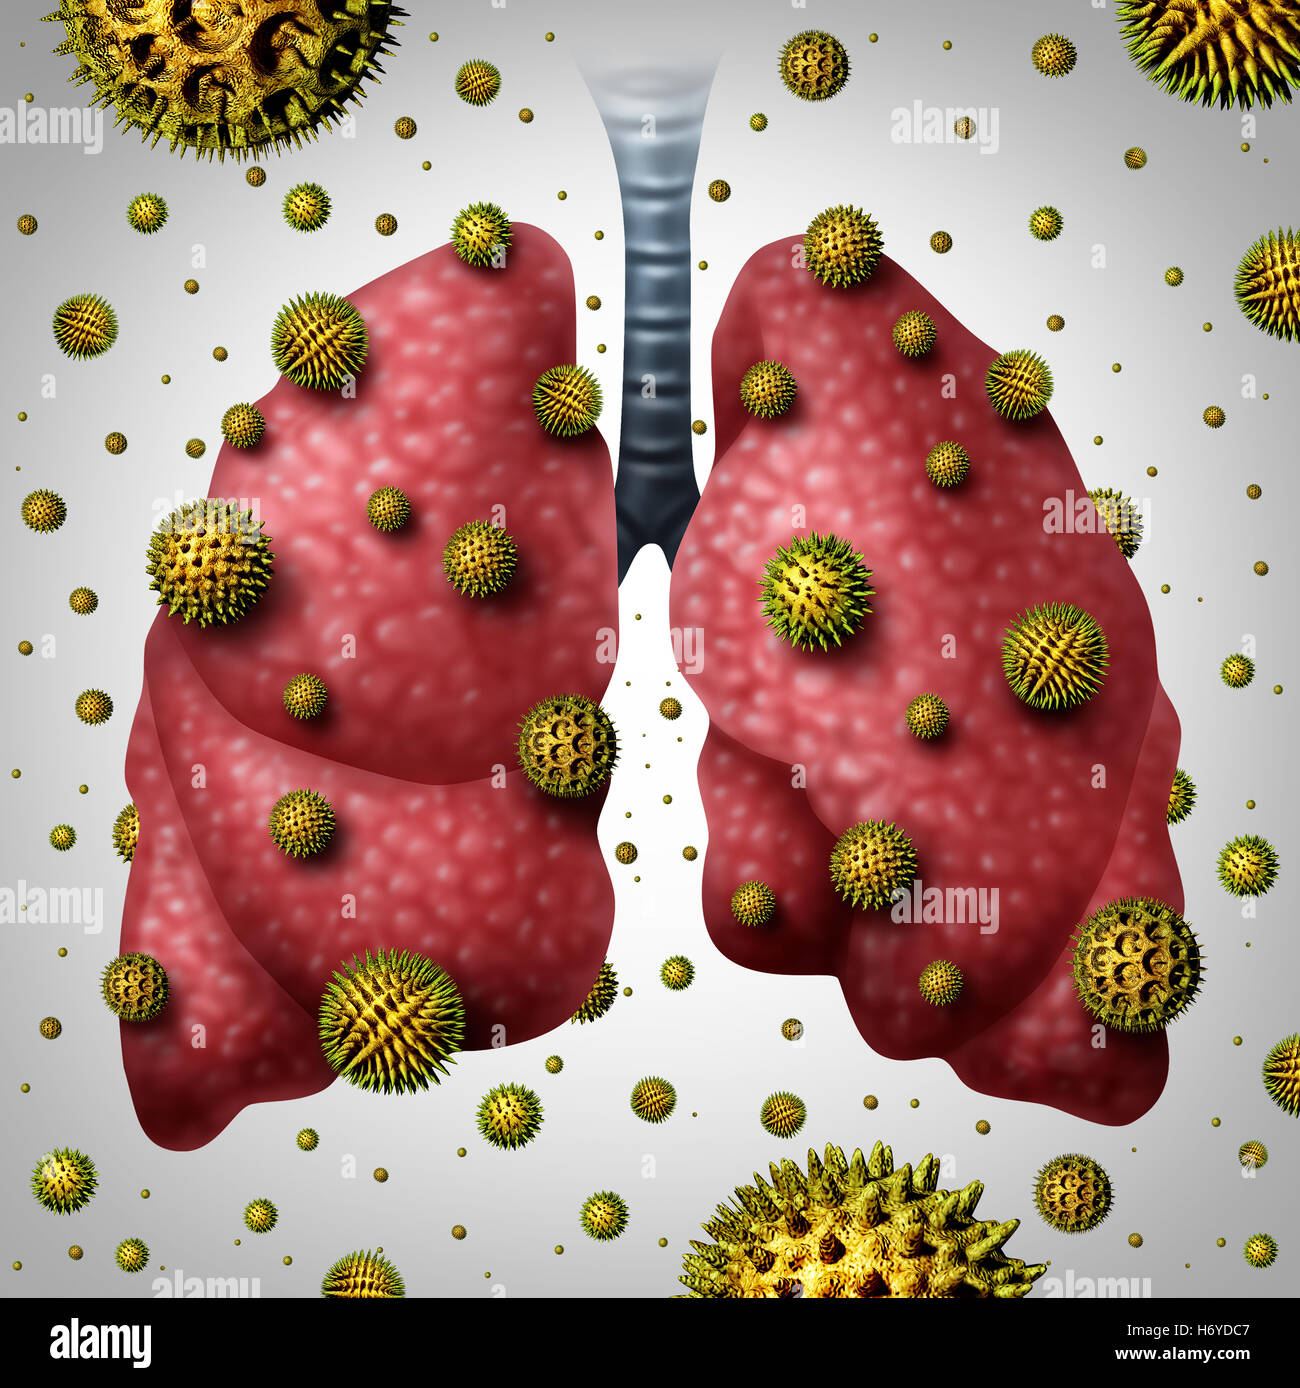 Lunge-Allergie medizinisches Konzept als menschliche Lunge mit Luft Pollenkörner infizieren die Atmung Orgel als Asthma auslösen oder allergische Reaktion Symbol mit 3D Abbildung Elemente. Stockfoto